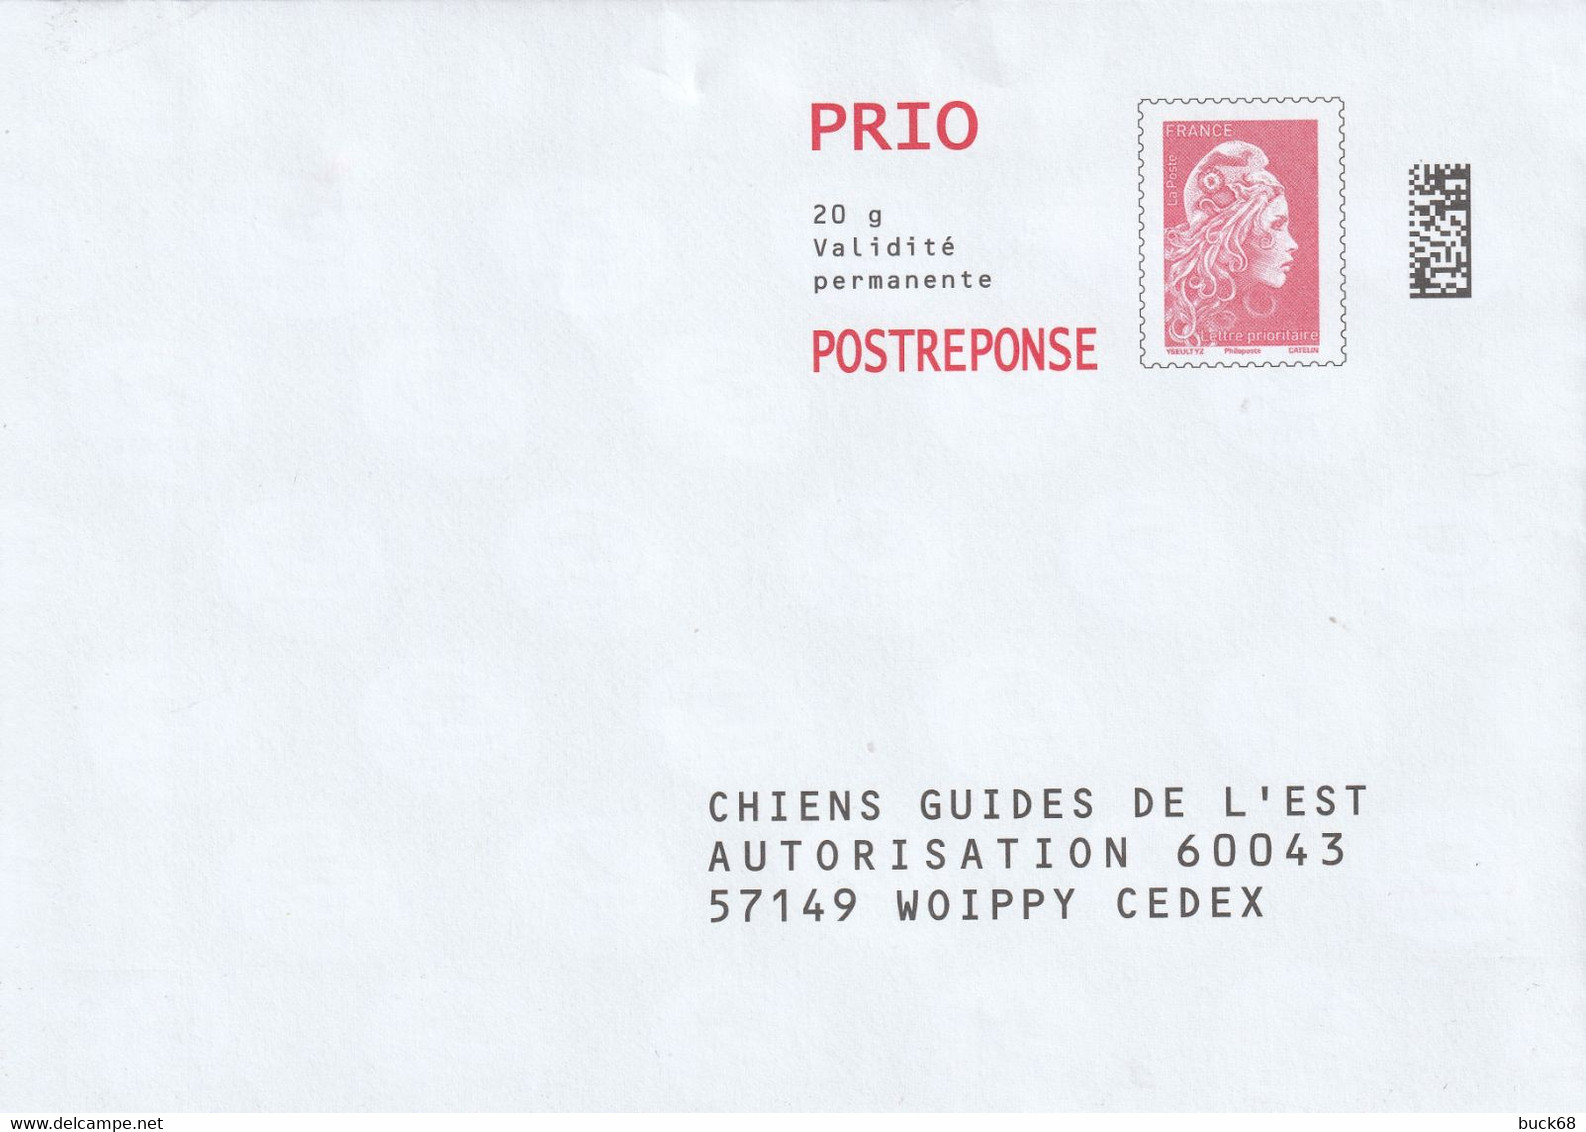 FRANCE Enveloppe Entier Postal Marianne D'YZ (street Artist) Prio 20 G Chiens Guides De L'Est - Karten/Antwortumschläge T